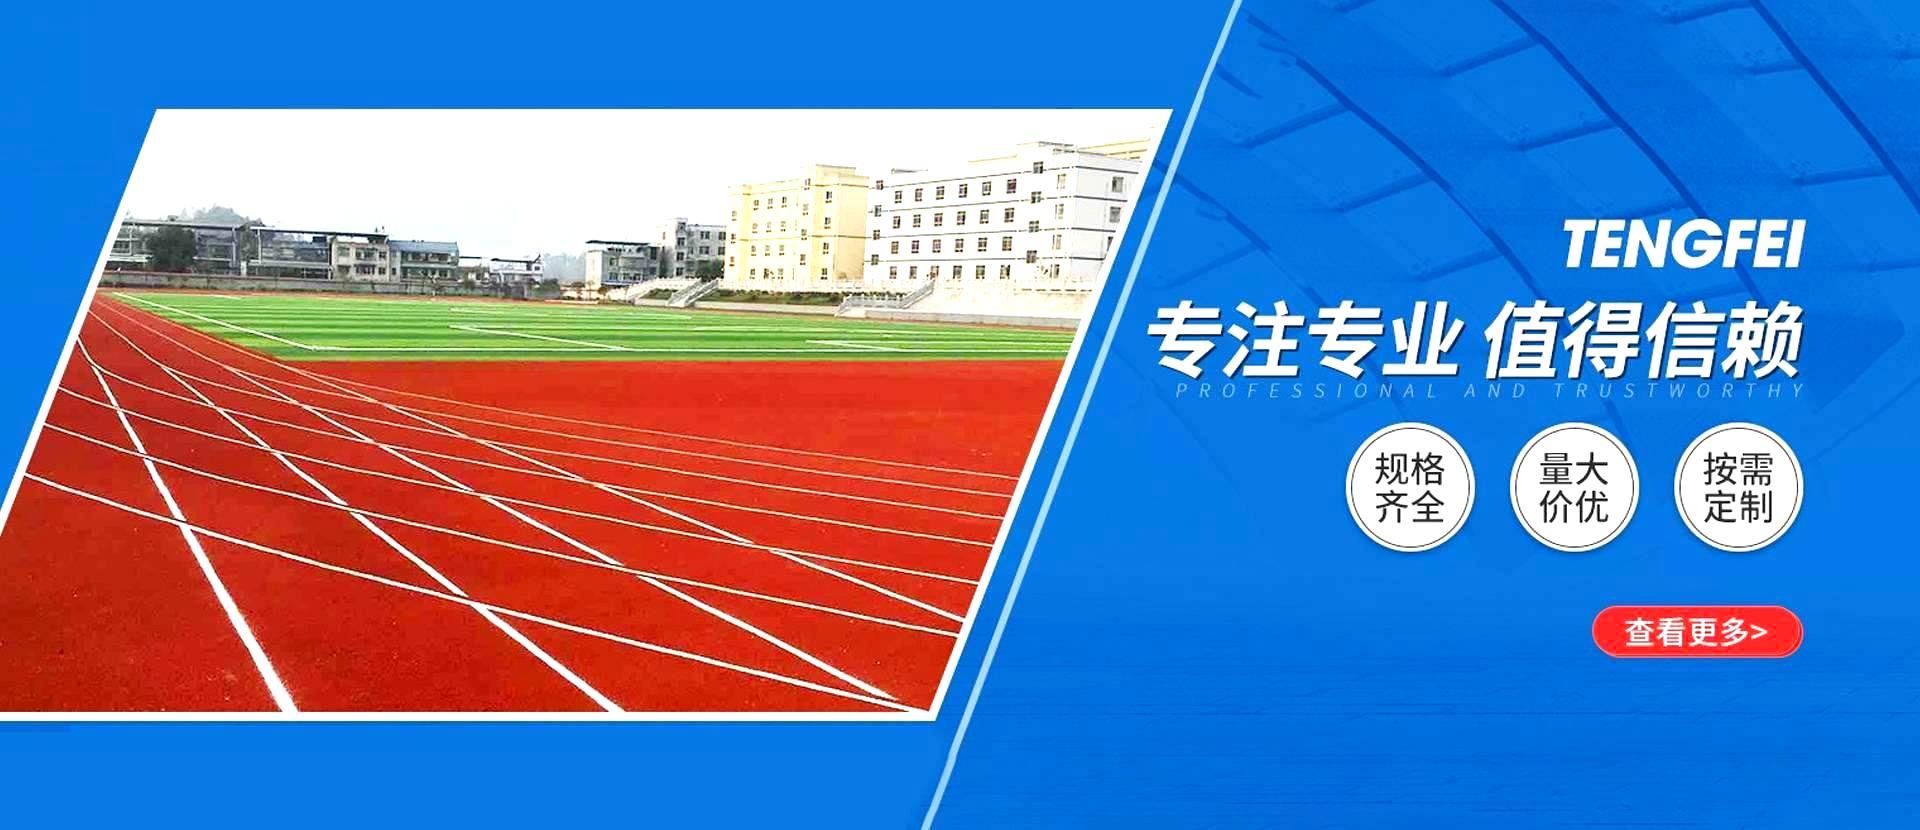 江苏J9九游会体育设施材料有限公司